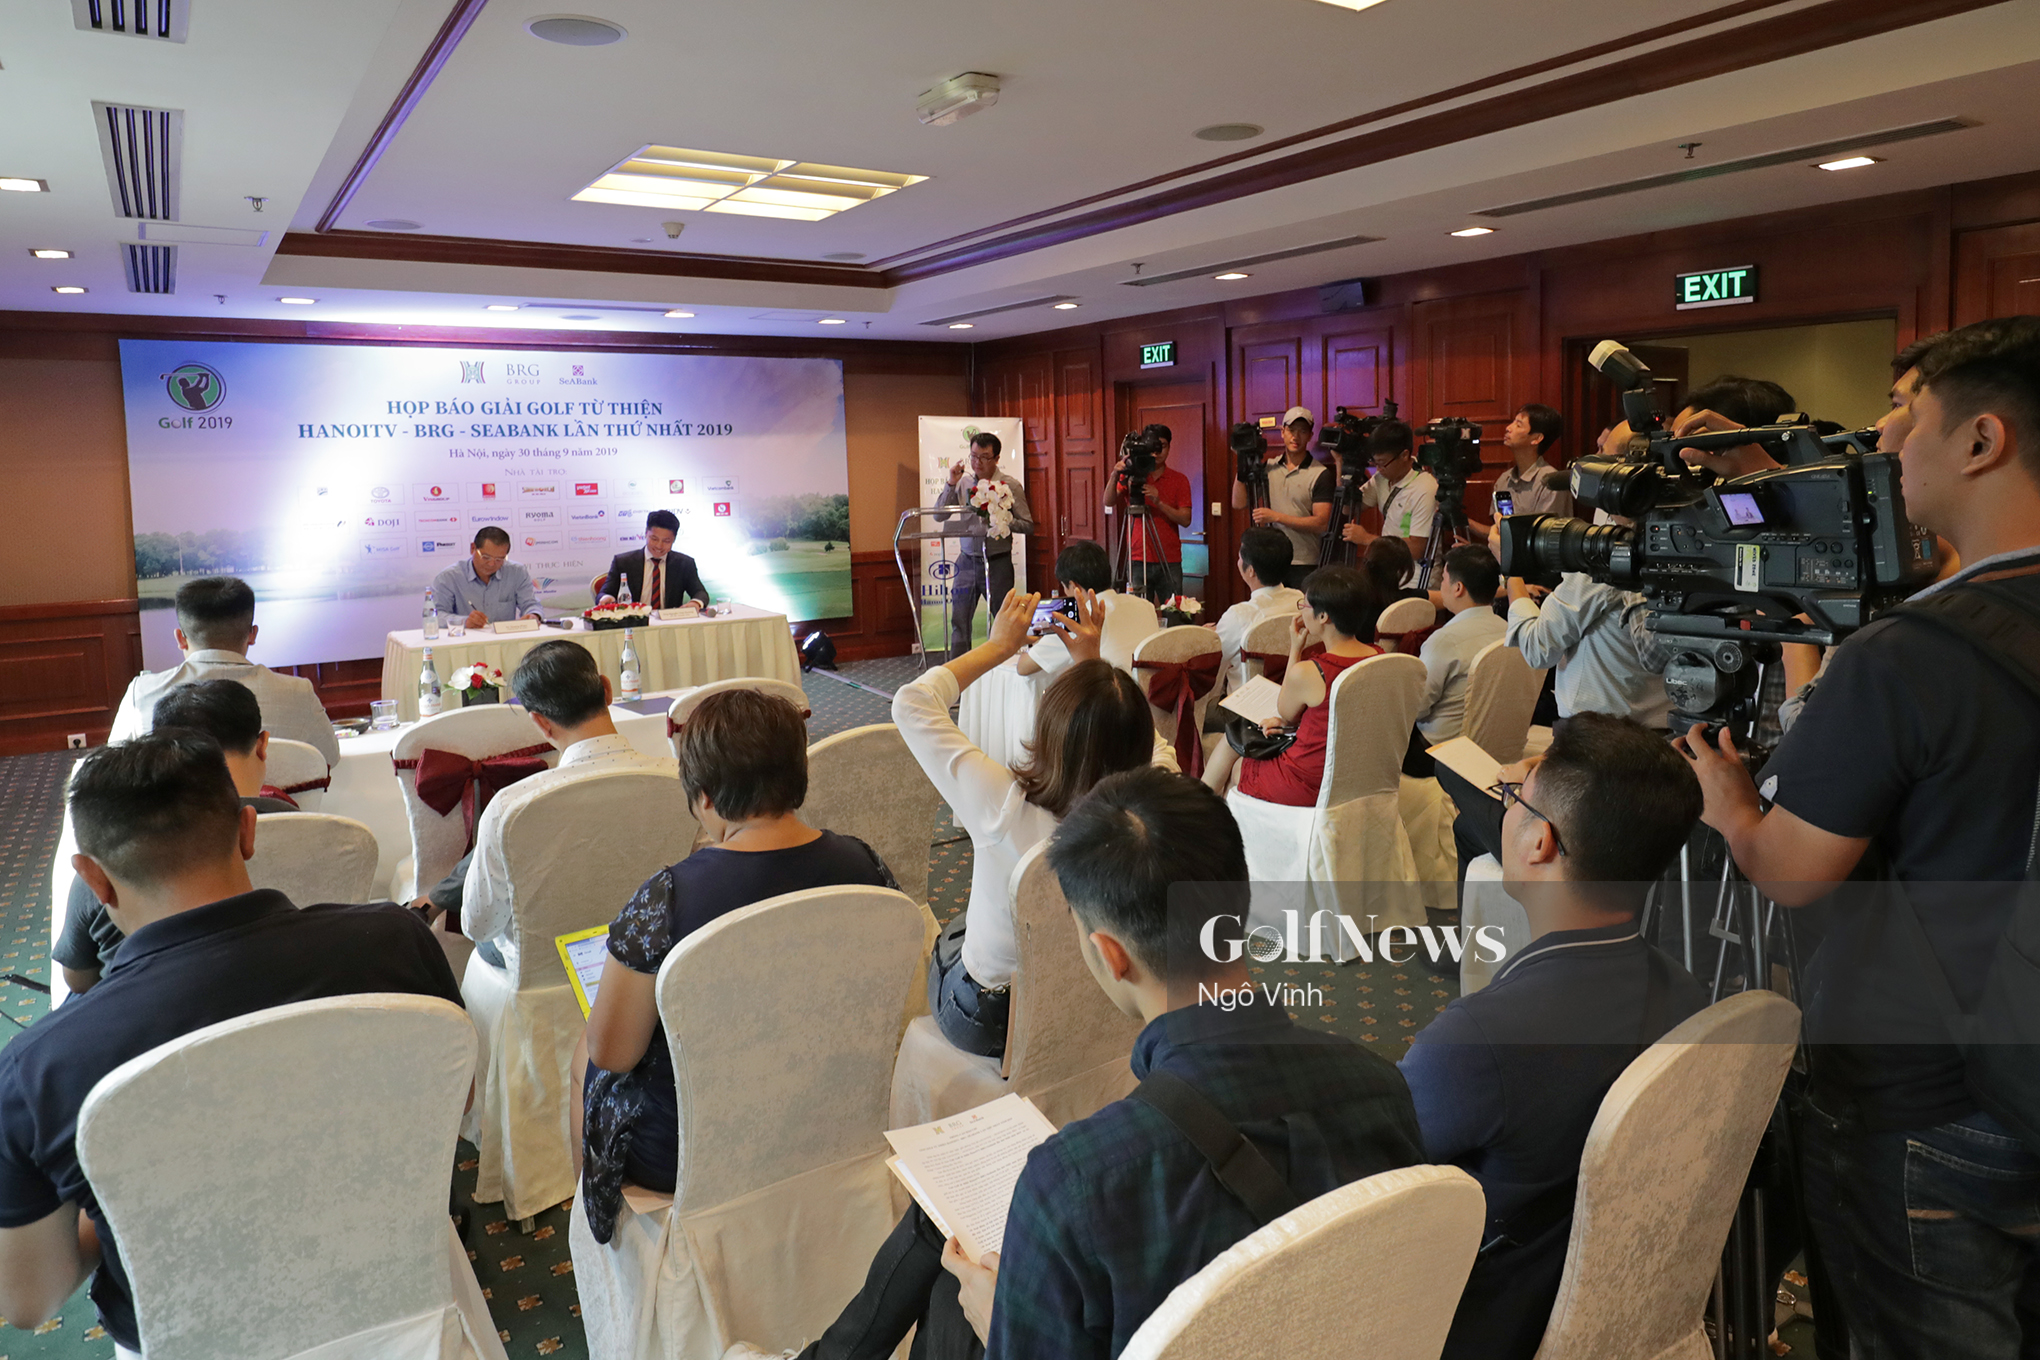 144 golfer tham dự giải golf từ thiện do Đài PT-TH Hà Nội-BRG- SeABank tổ chức